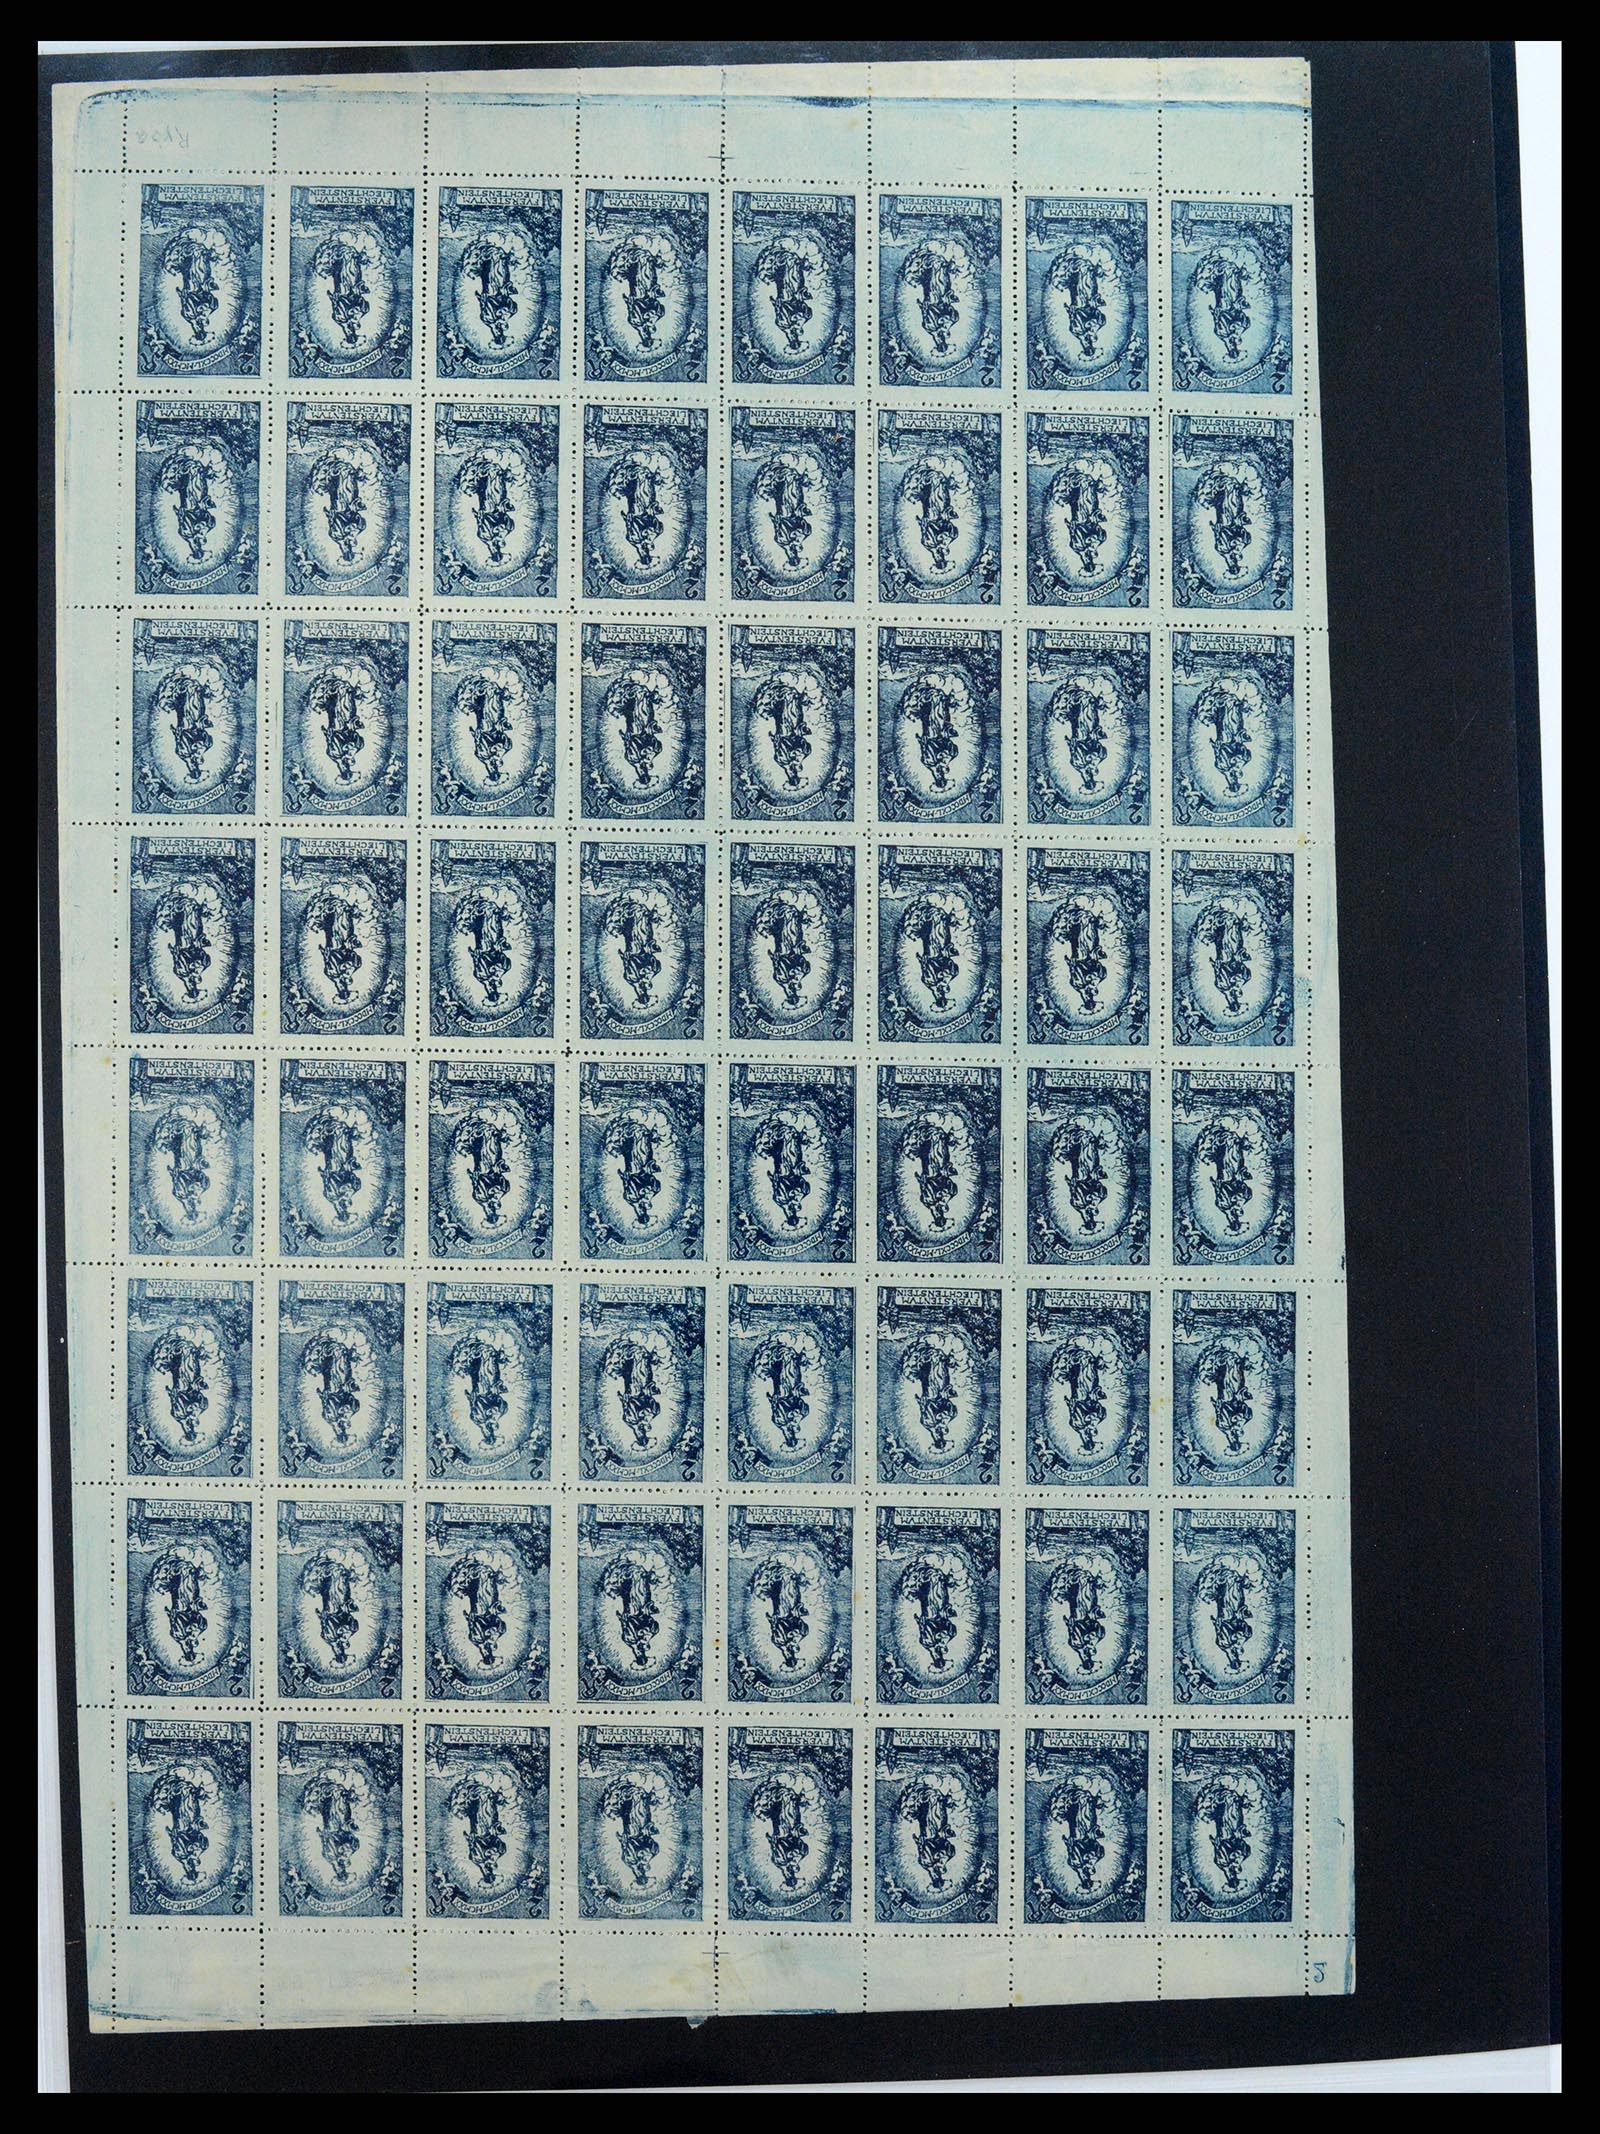 37150 1678 - Stamp collection 37150 Liechtenstein supercollection 1912-1962.